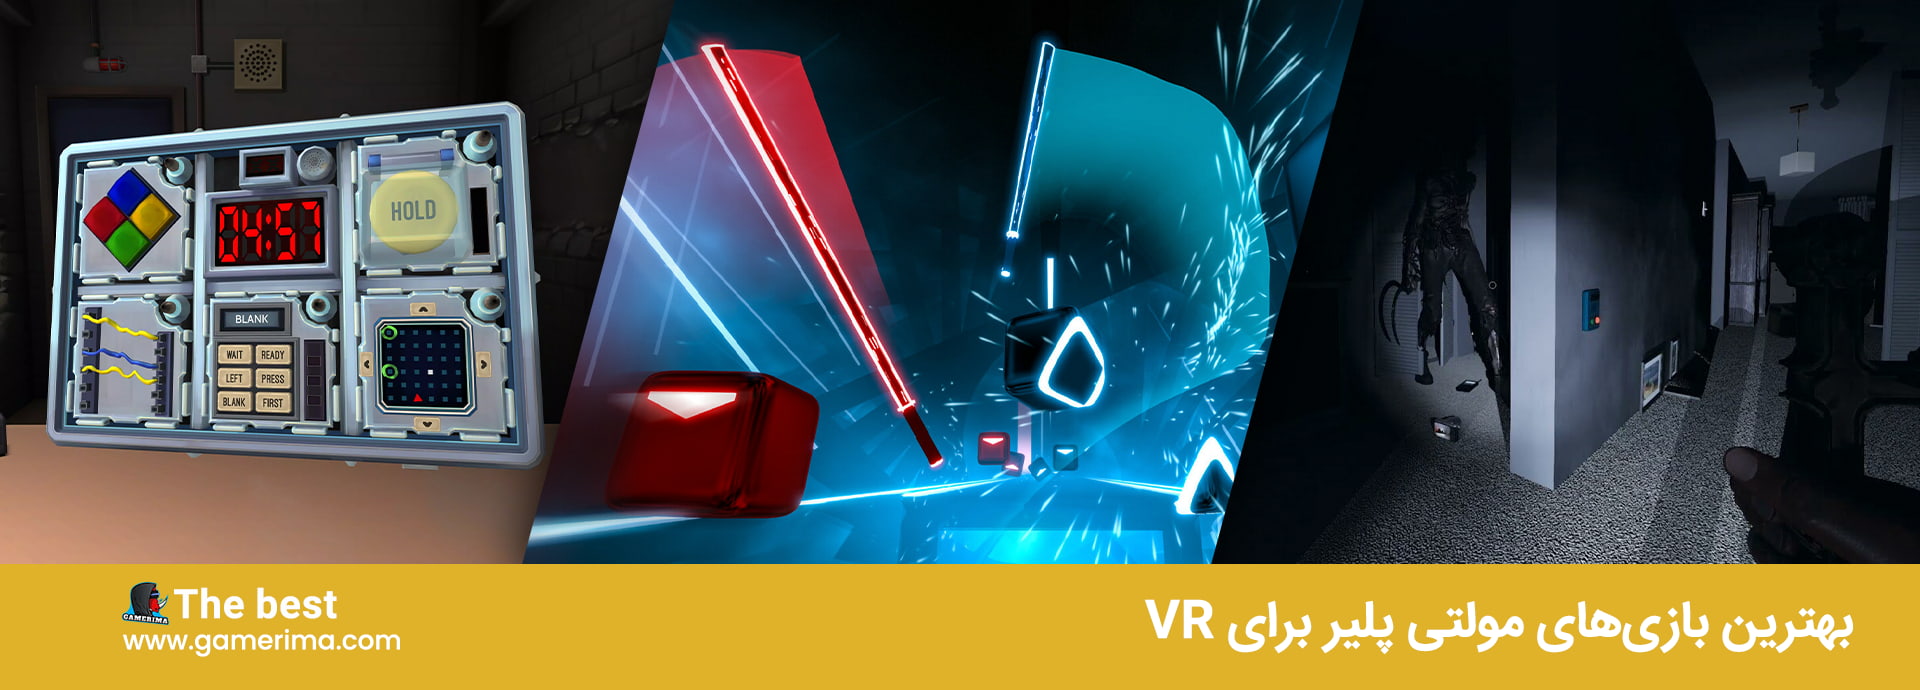 بهترین بازی های مولتی پلیر برای VR